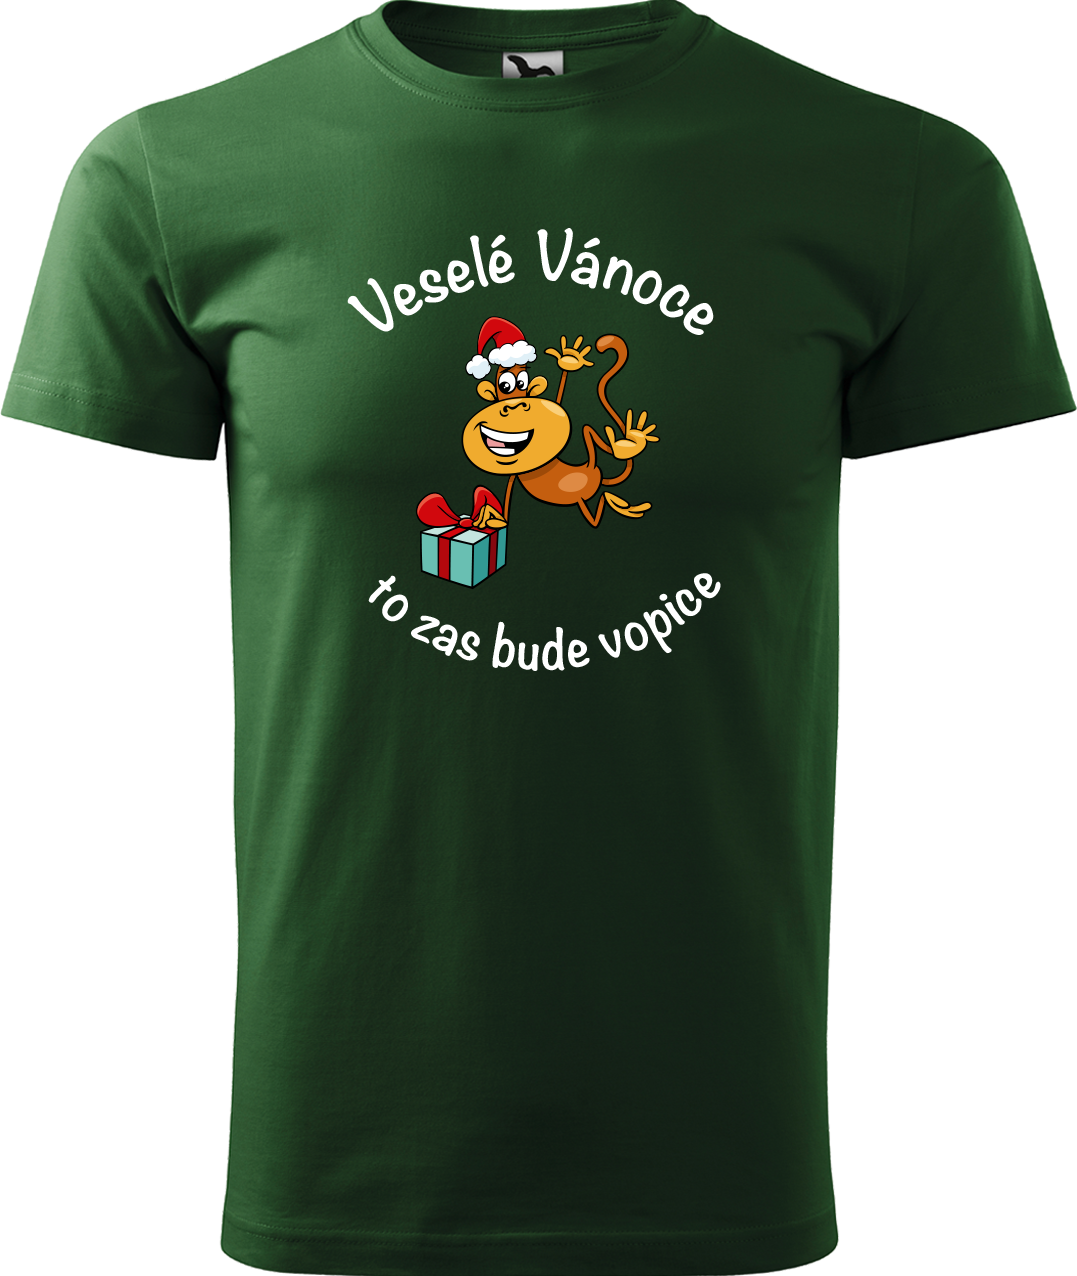 Pánské vánoční tričko - Veselé Vánoce to zas bude vopice (SLEVA) Velikost: L, Barva: Lahvově zelená (06)